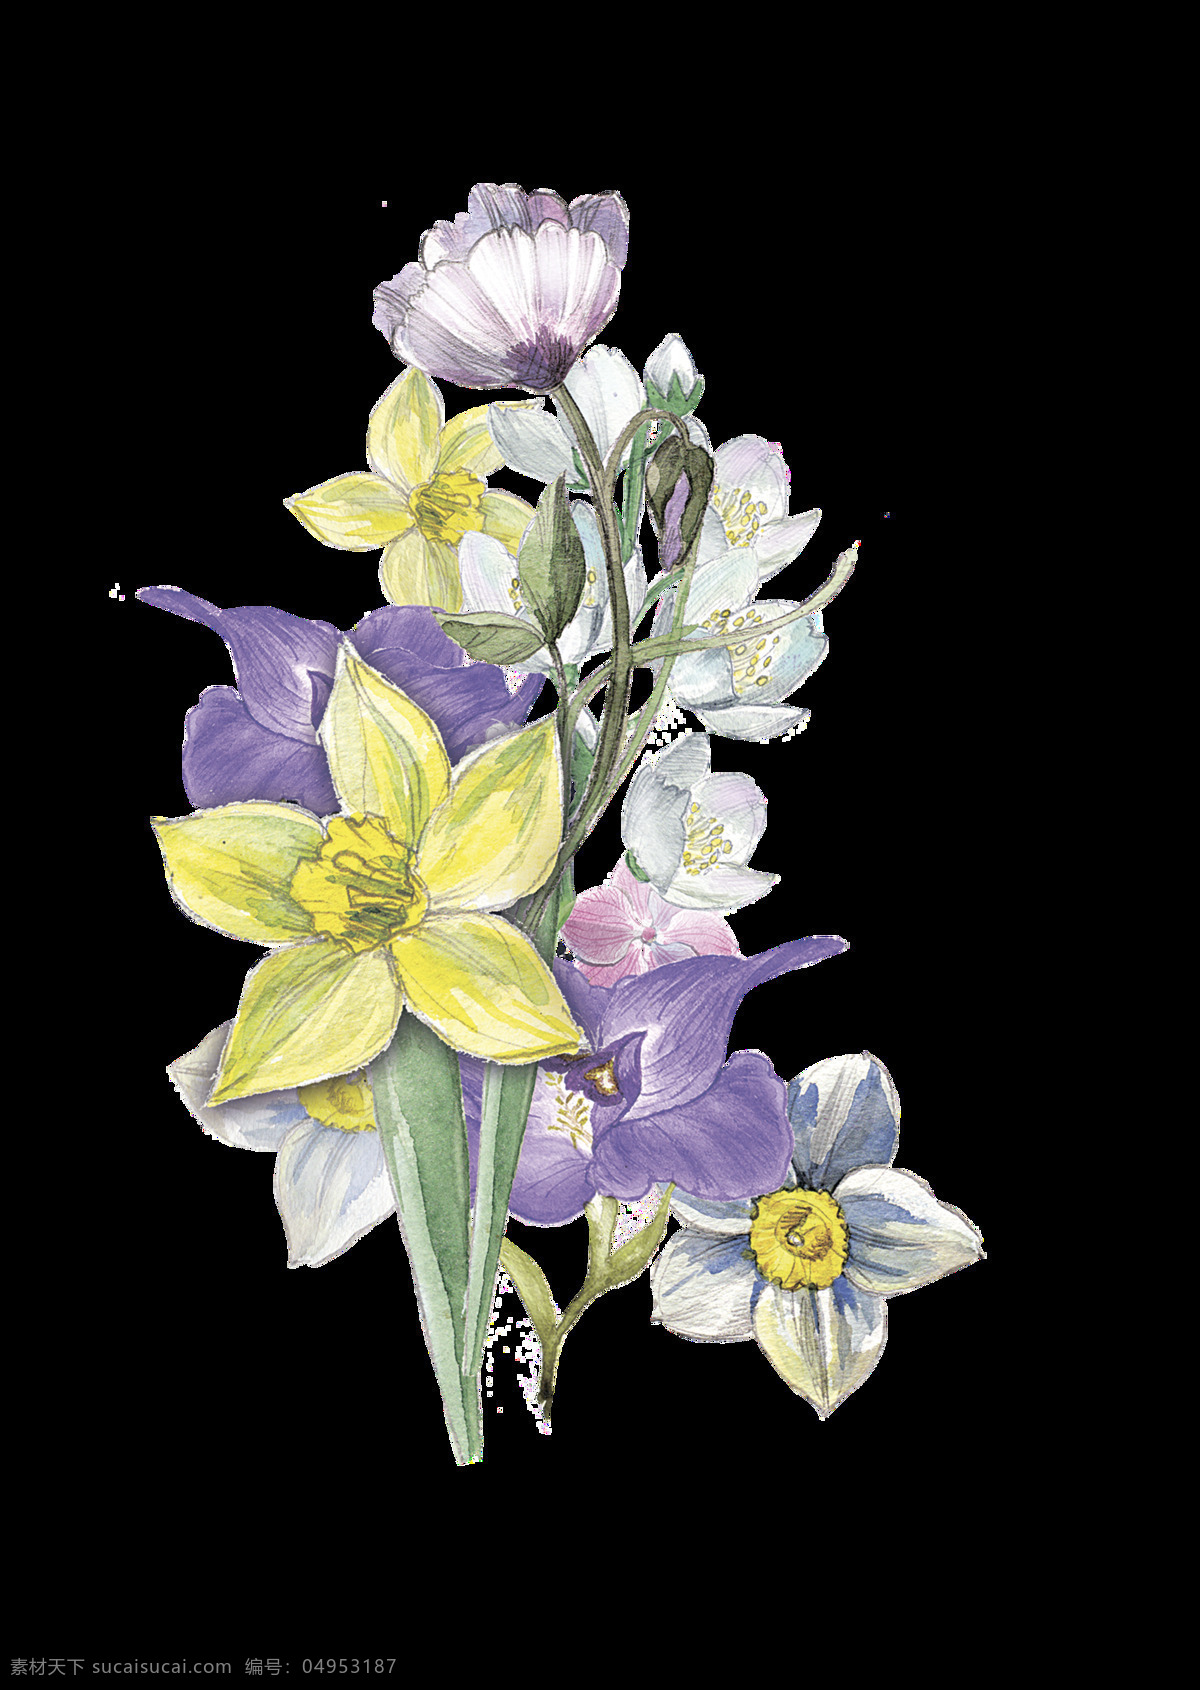 黄 紫 花丛 透明 装饰 花朵 紫色 矢量素材 设计素材 平面素材